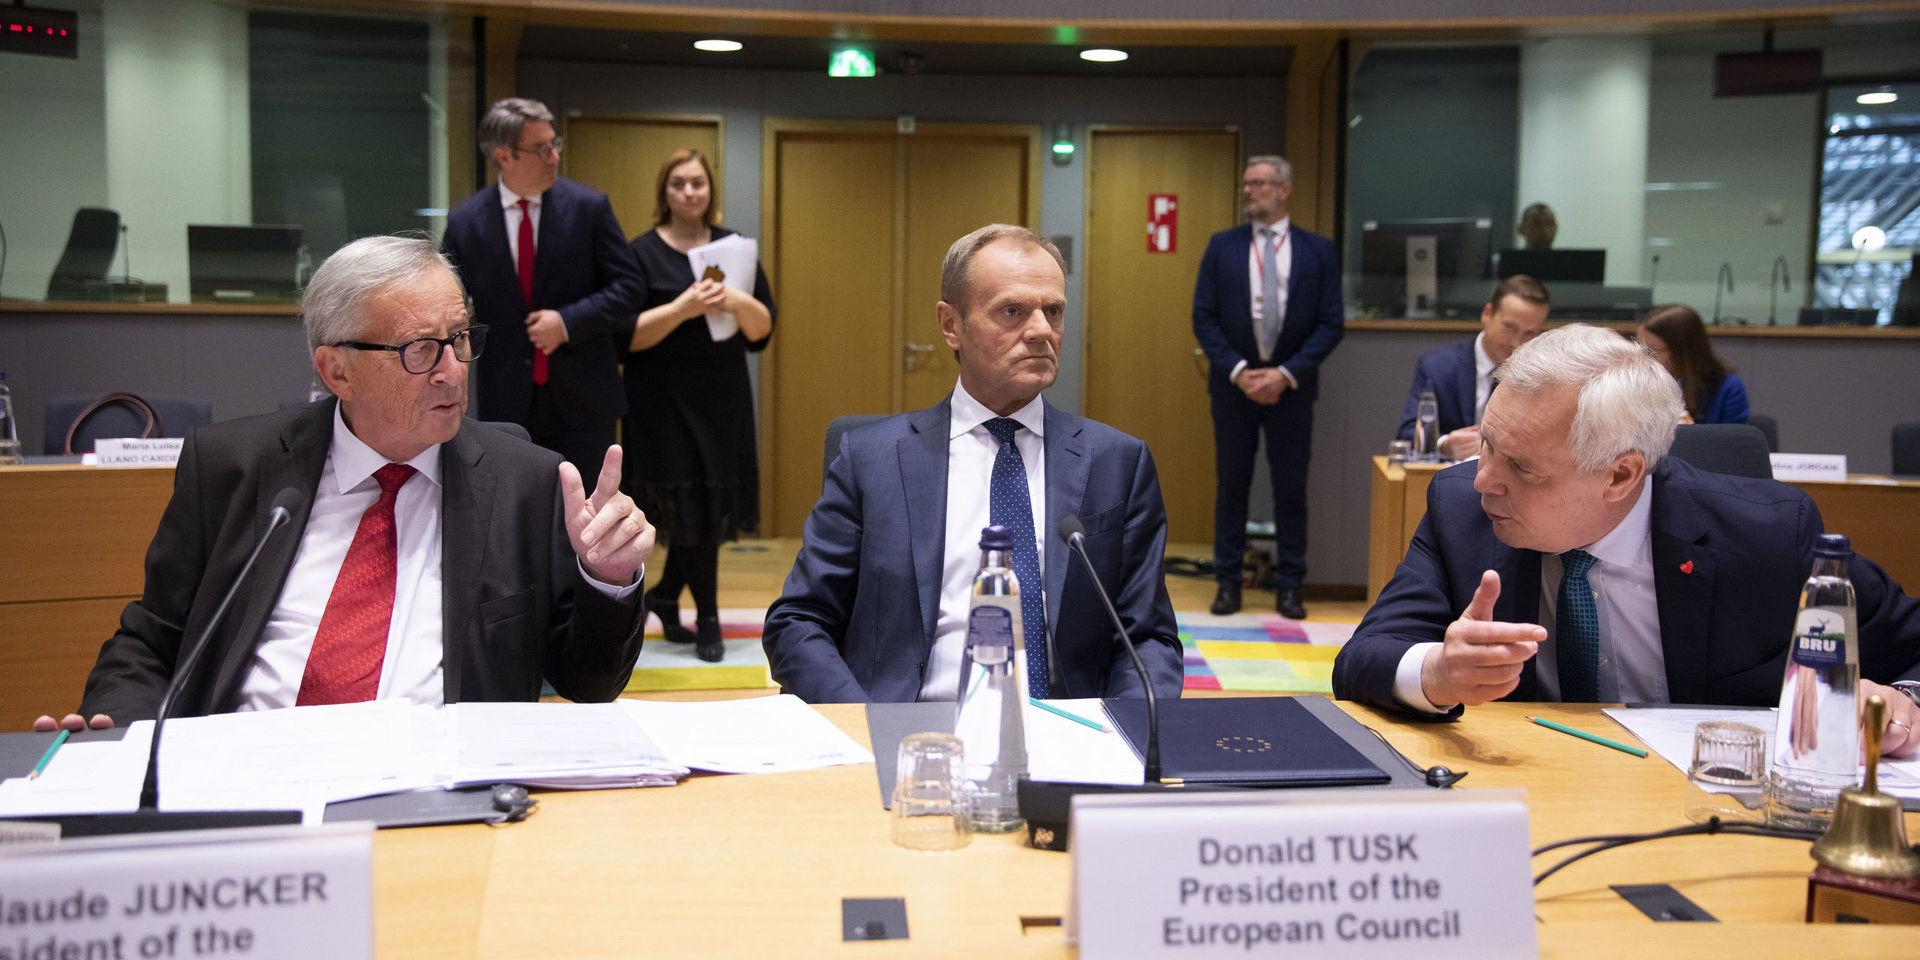 EU:s permanente rådsordförande Donald Tusk i mitten, EU-kommissionens ordförande Jean-Claude Juncker till väsnter och Finlands statsminister Antti Rinne under onsdagens överläggningar. Enligt Tusk kan ett brexitbesked komma senare under dagen. J